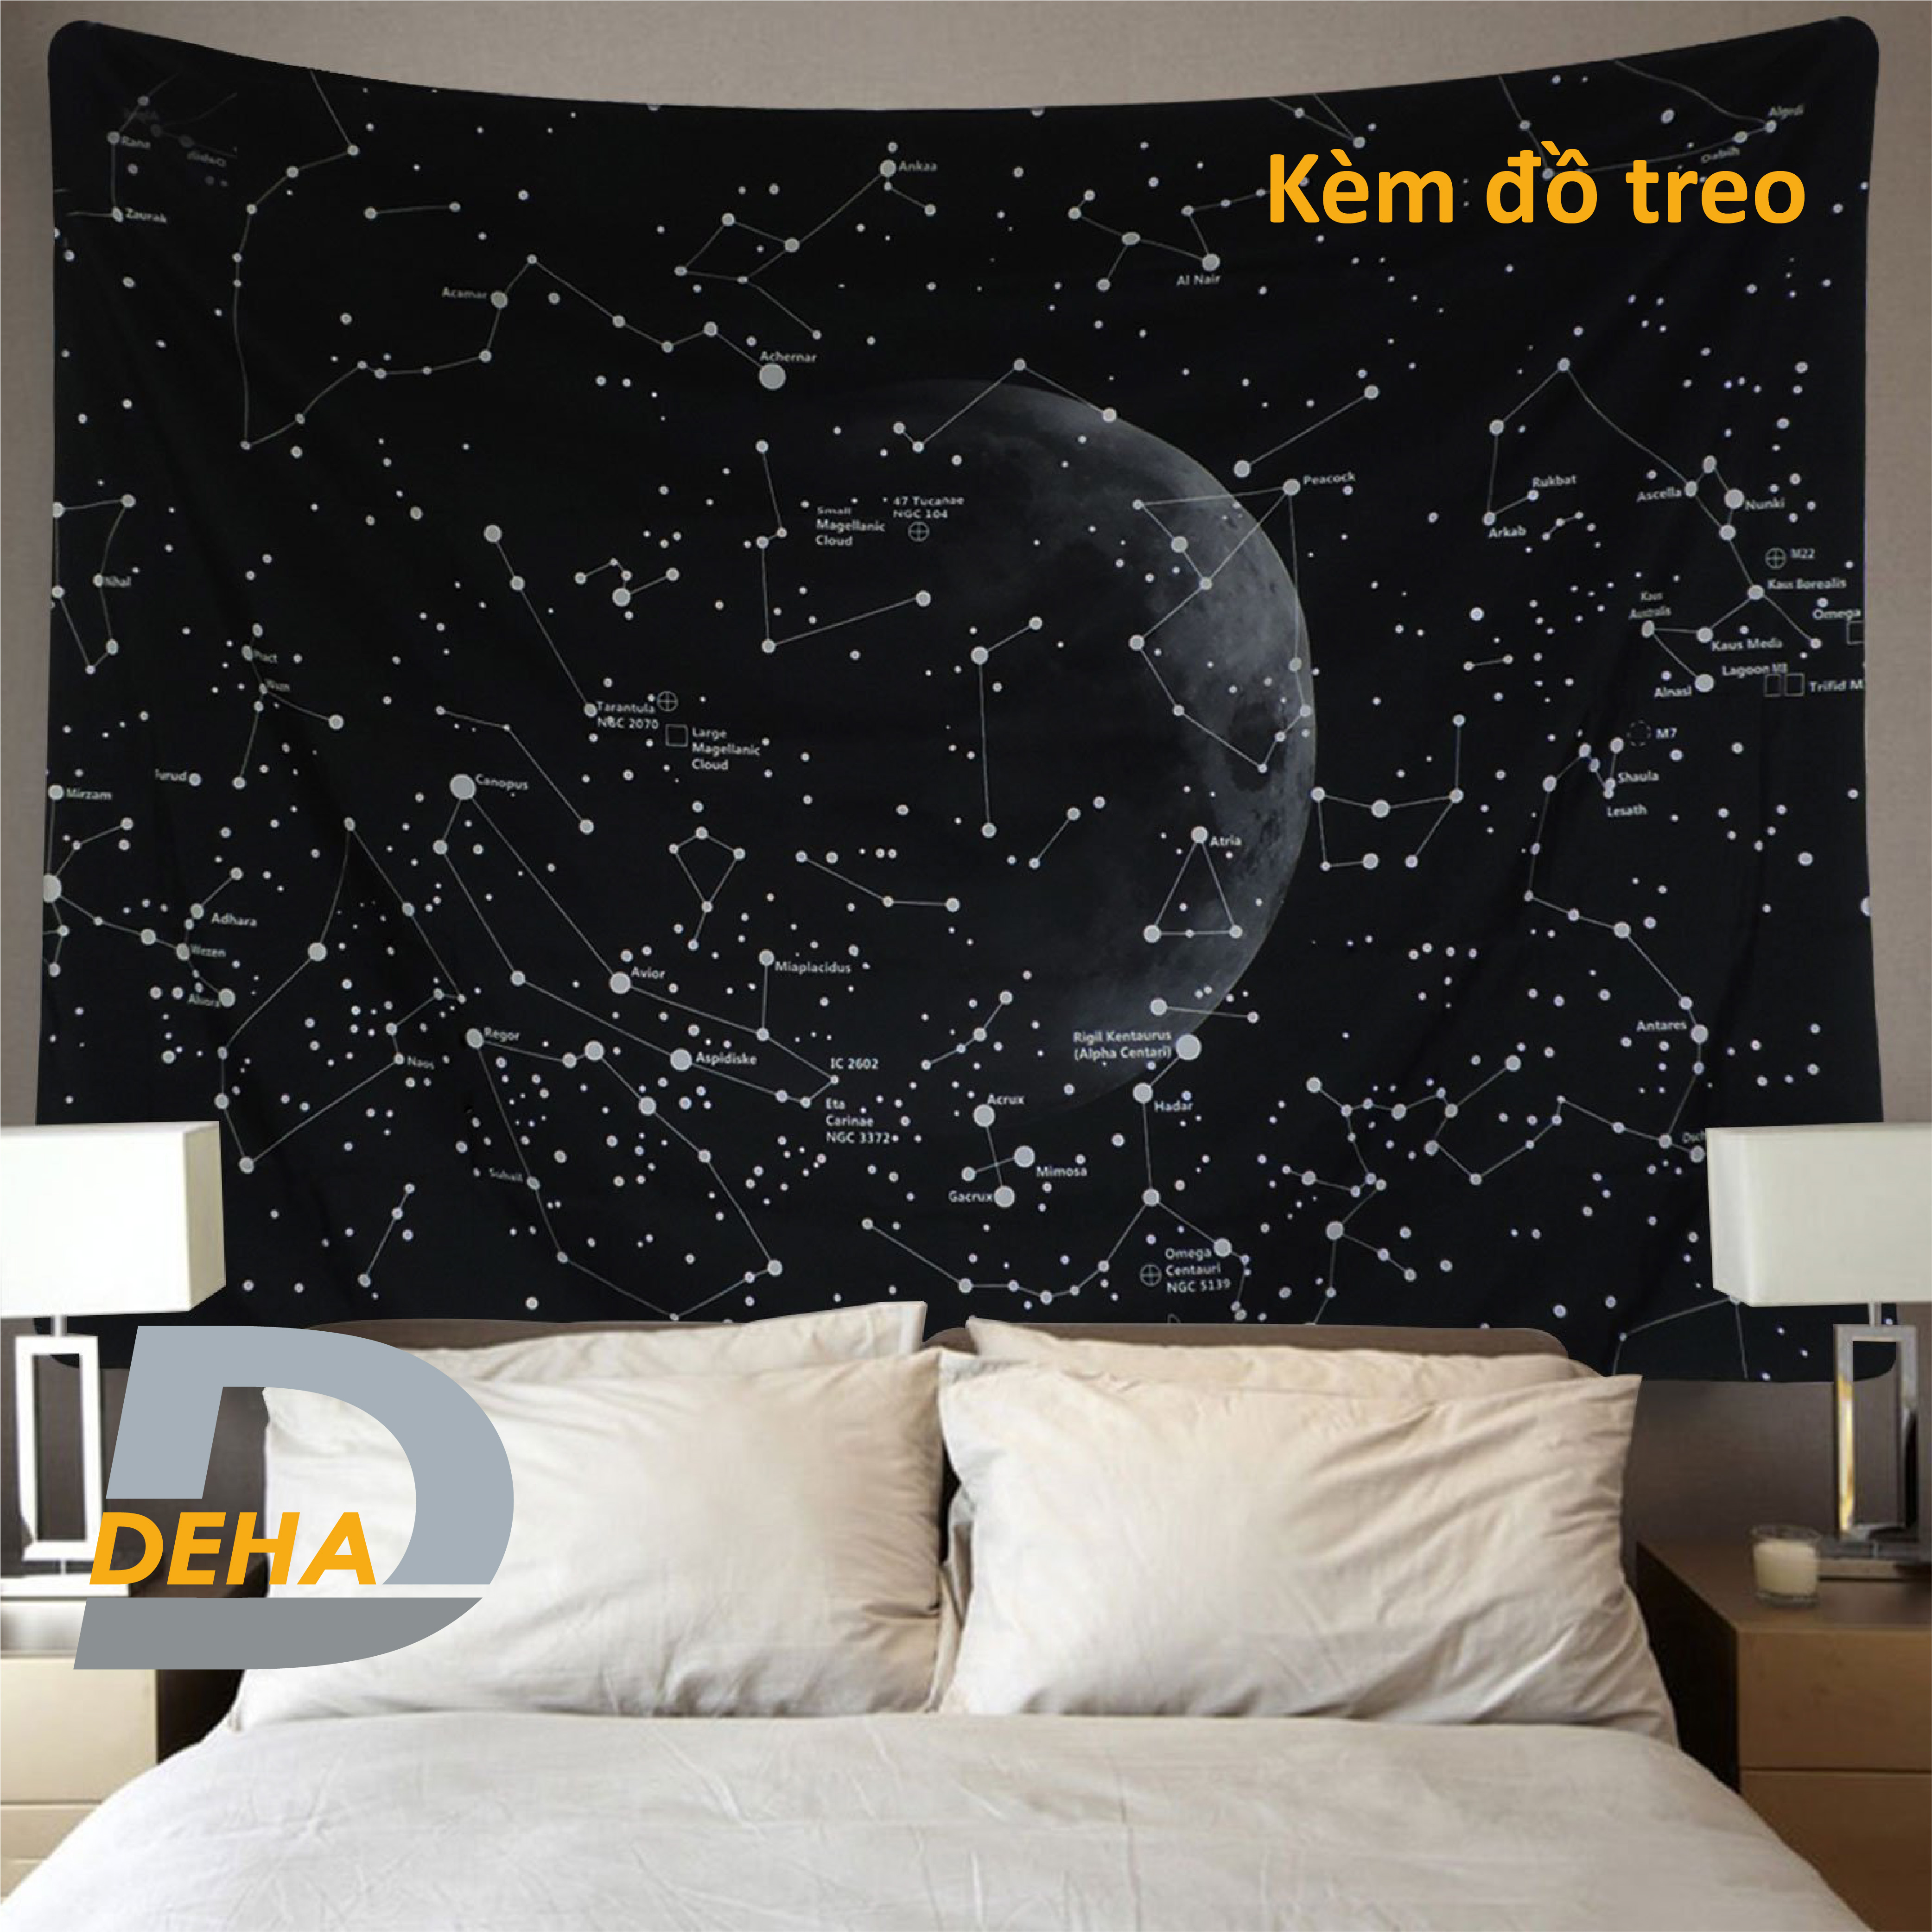 Hình ảnh Thảm trang trí tranh vải treo tường họa tiết dải ngân hà bầu trời sao decor phòng nhà cửa, dán tường, cạnh giường